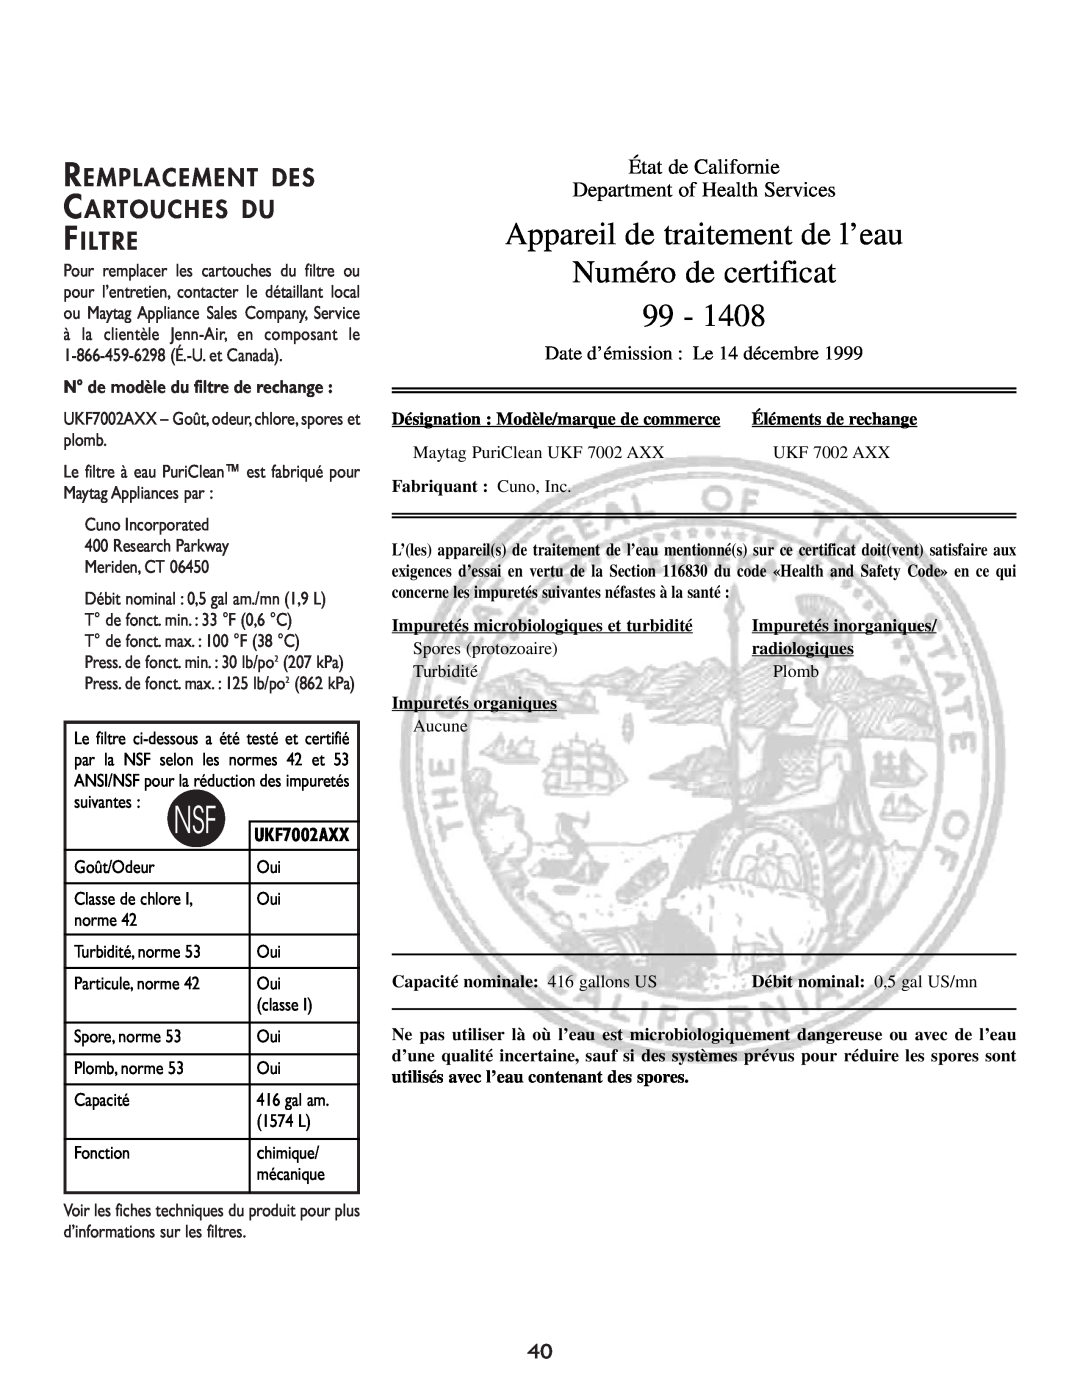 Cuno 111405-1 manual Appareil de traitement de l’eau, Numéro de certificat 99, Remplacement Des Cartouches Du Filtre 